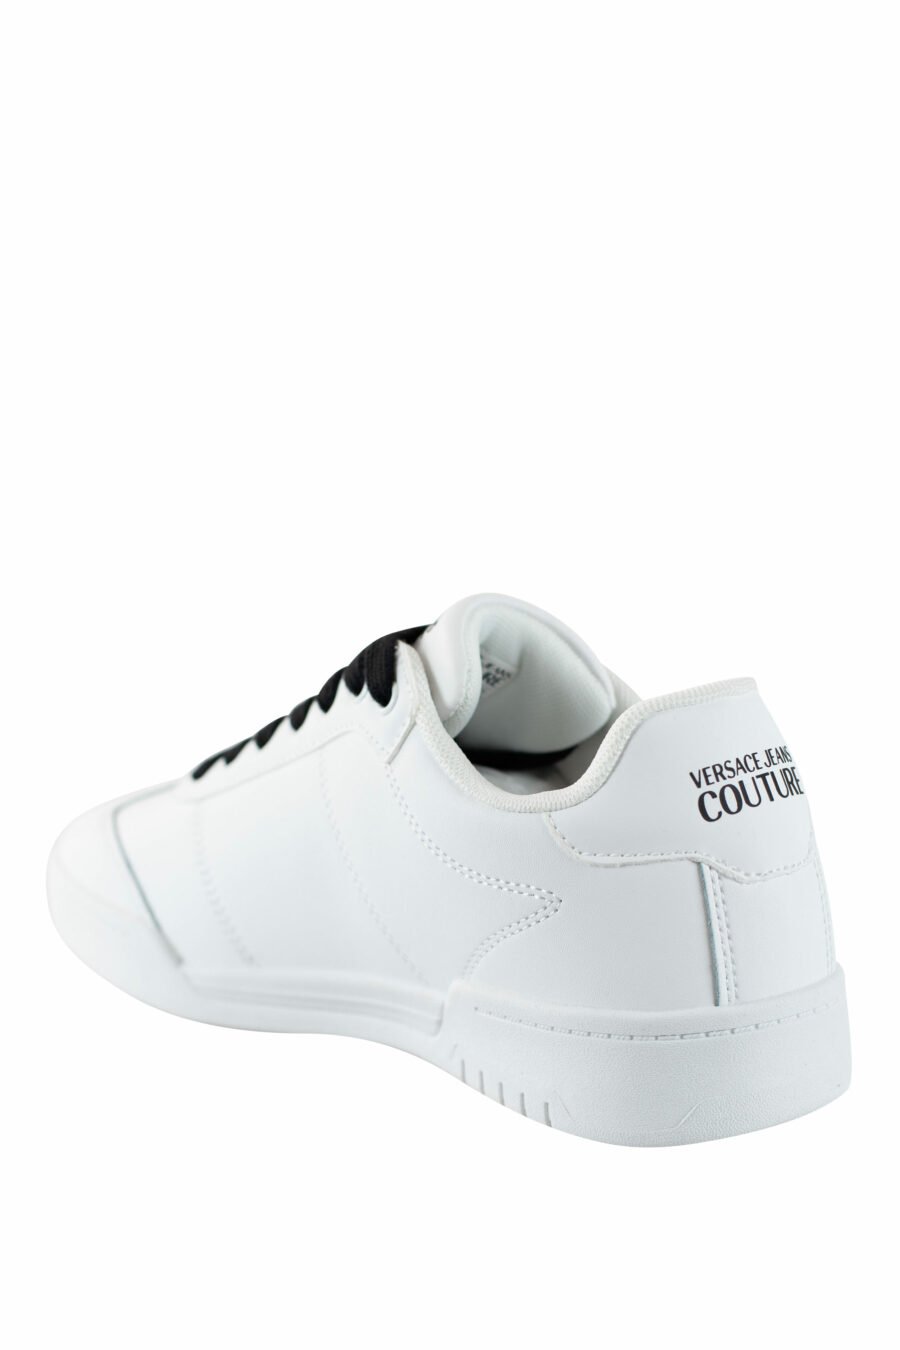 Zapatillas blancas con logo circular y cordones negros - IMG 4489